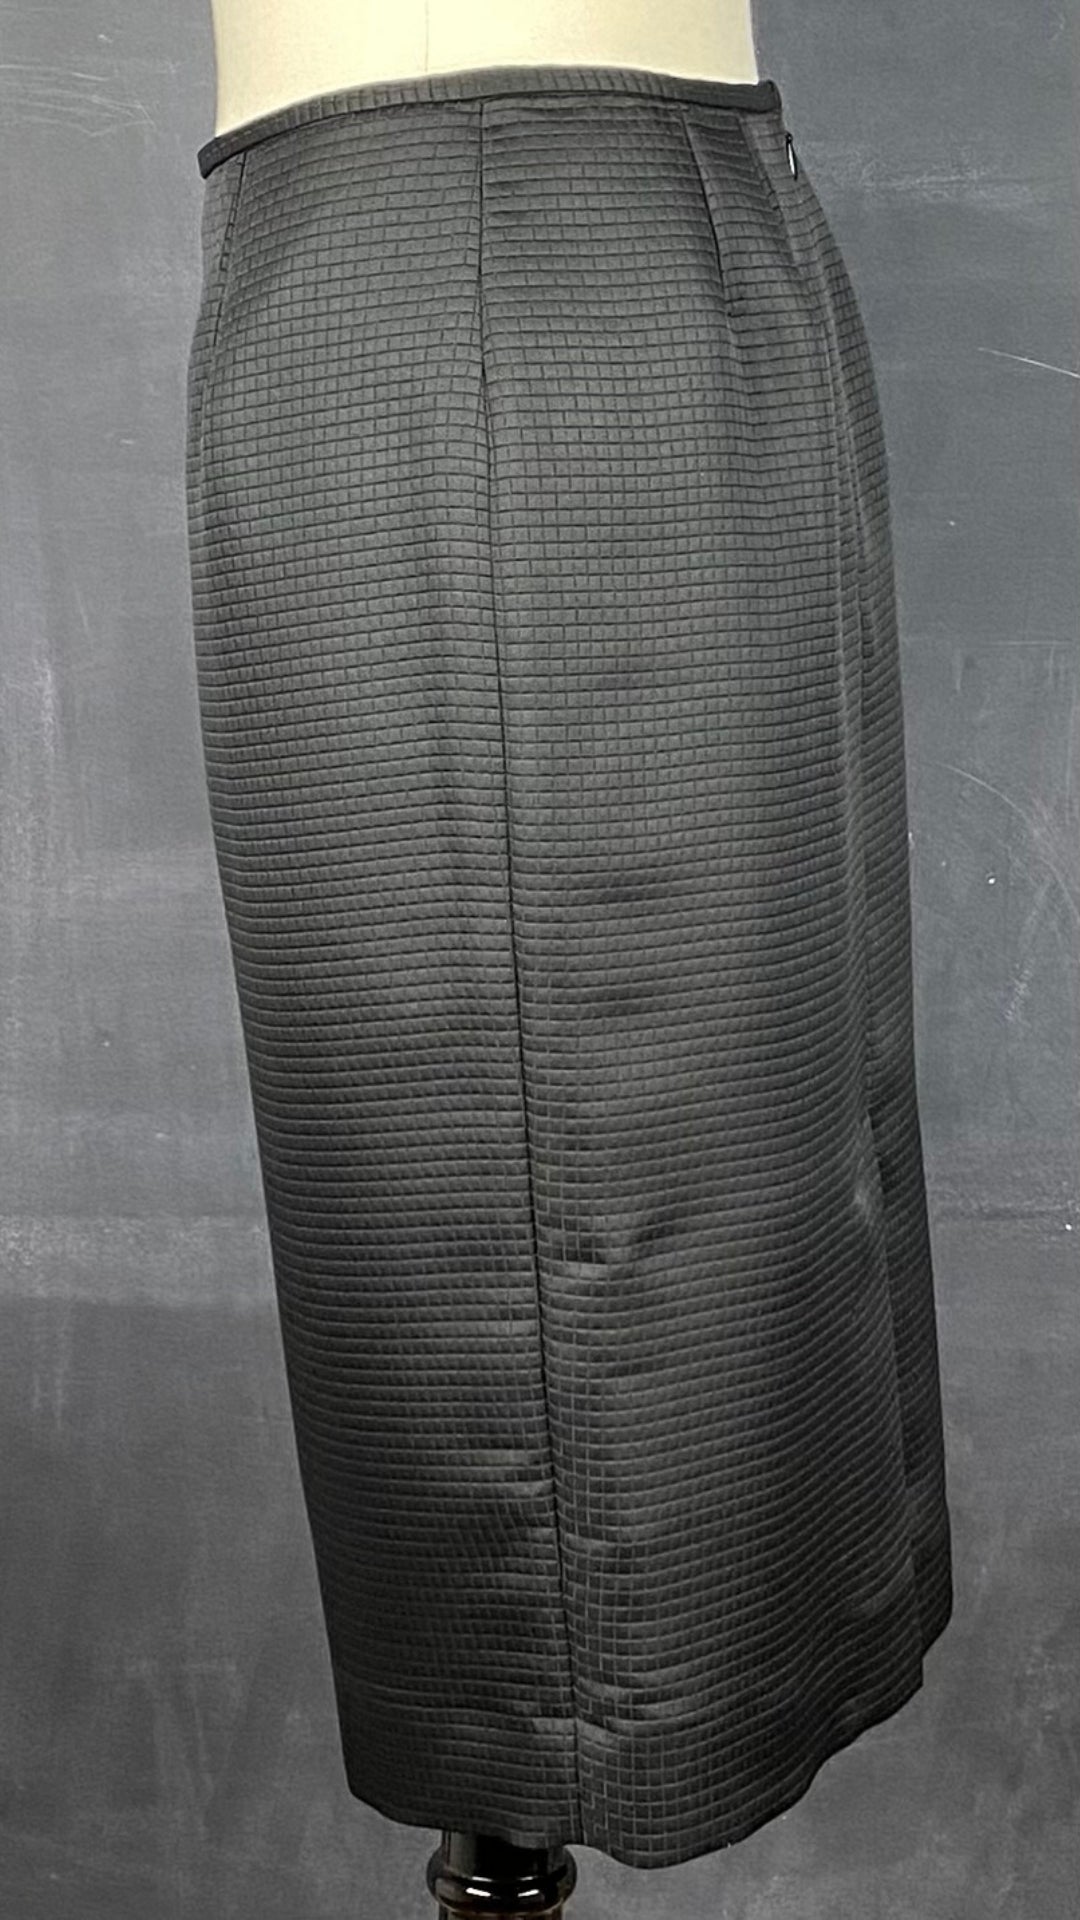 Jupe crayon noire texturée Calvin Klein, taille 6. Vue de côté.